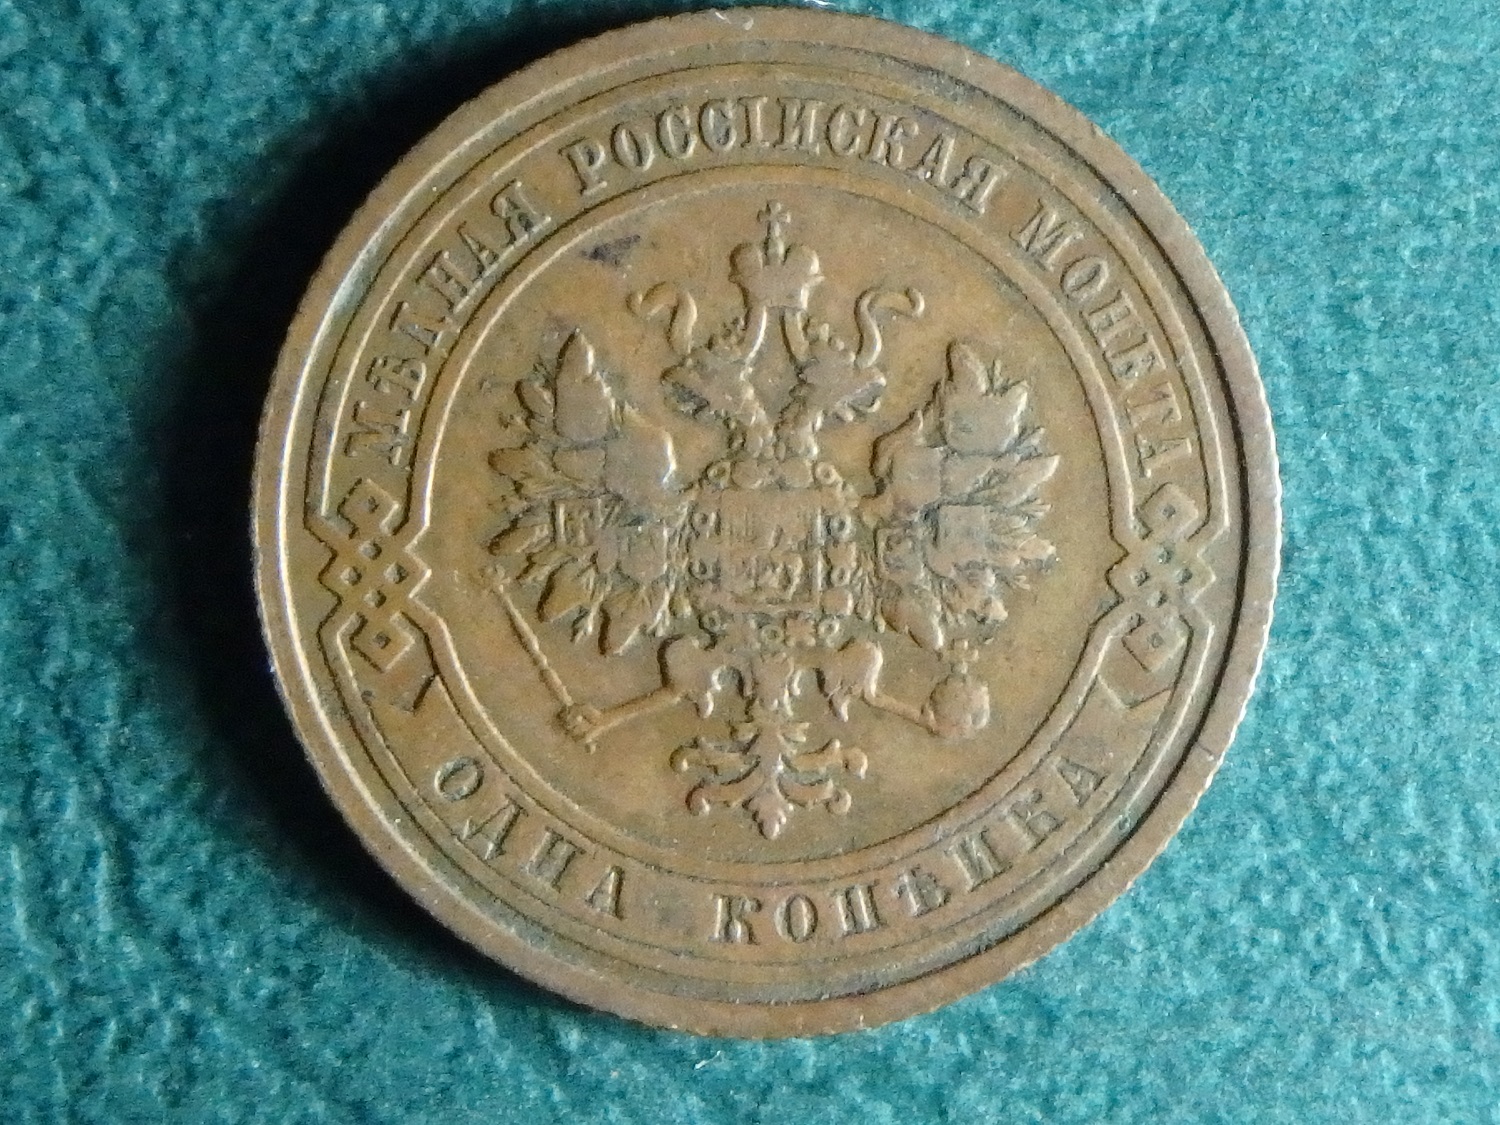 1910 RUS 1 k obv.JPG